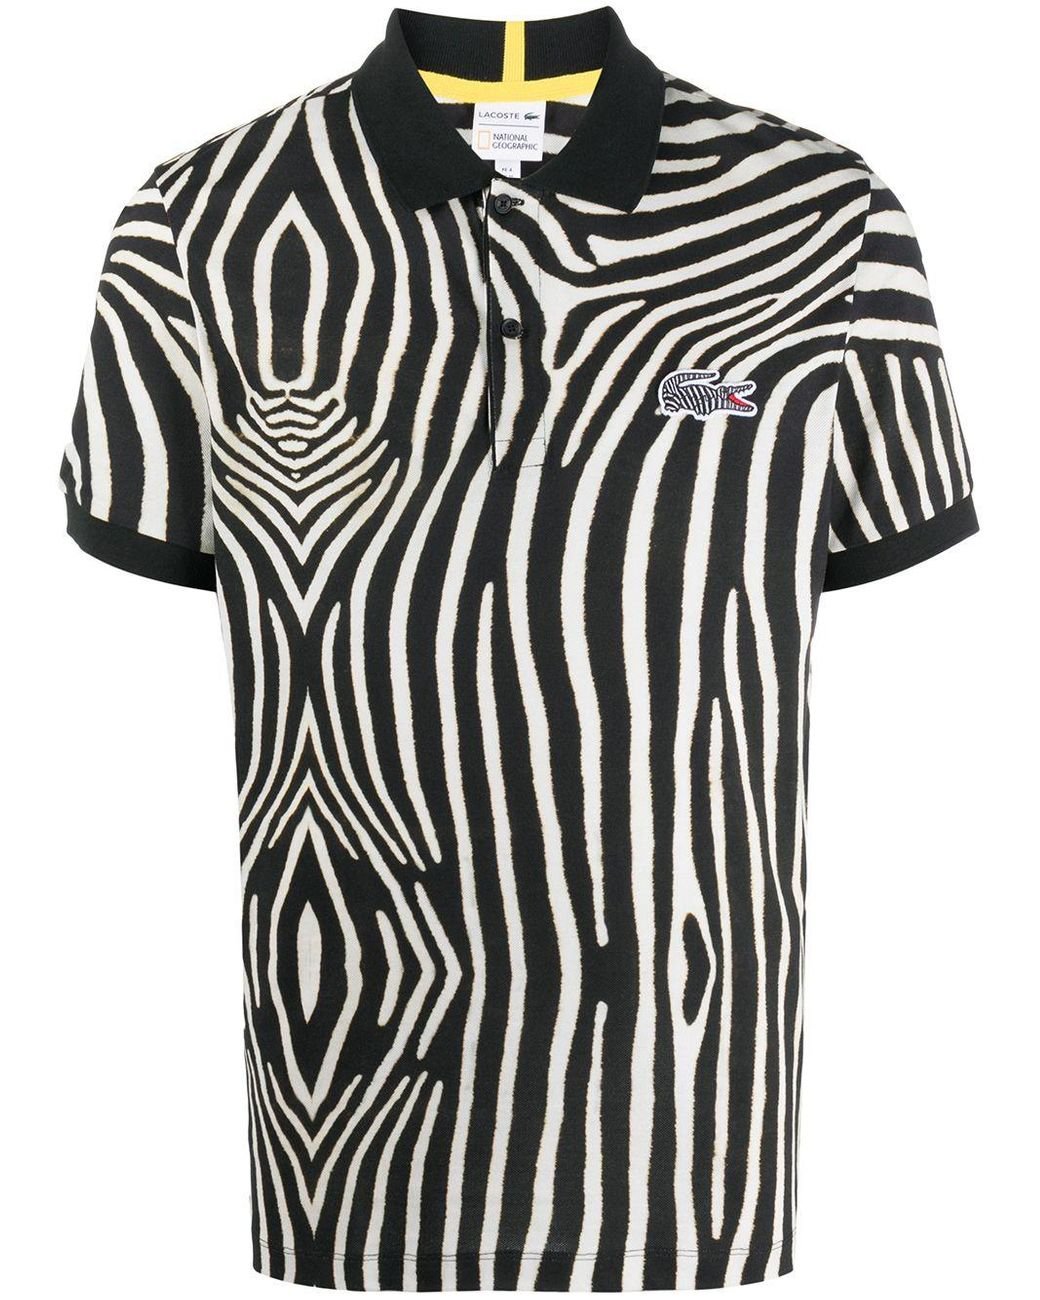 Beangstigend vermijden Ga lekker liggen Lacoste Zebra Print Polo Shirt in Black for Men | Lyst